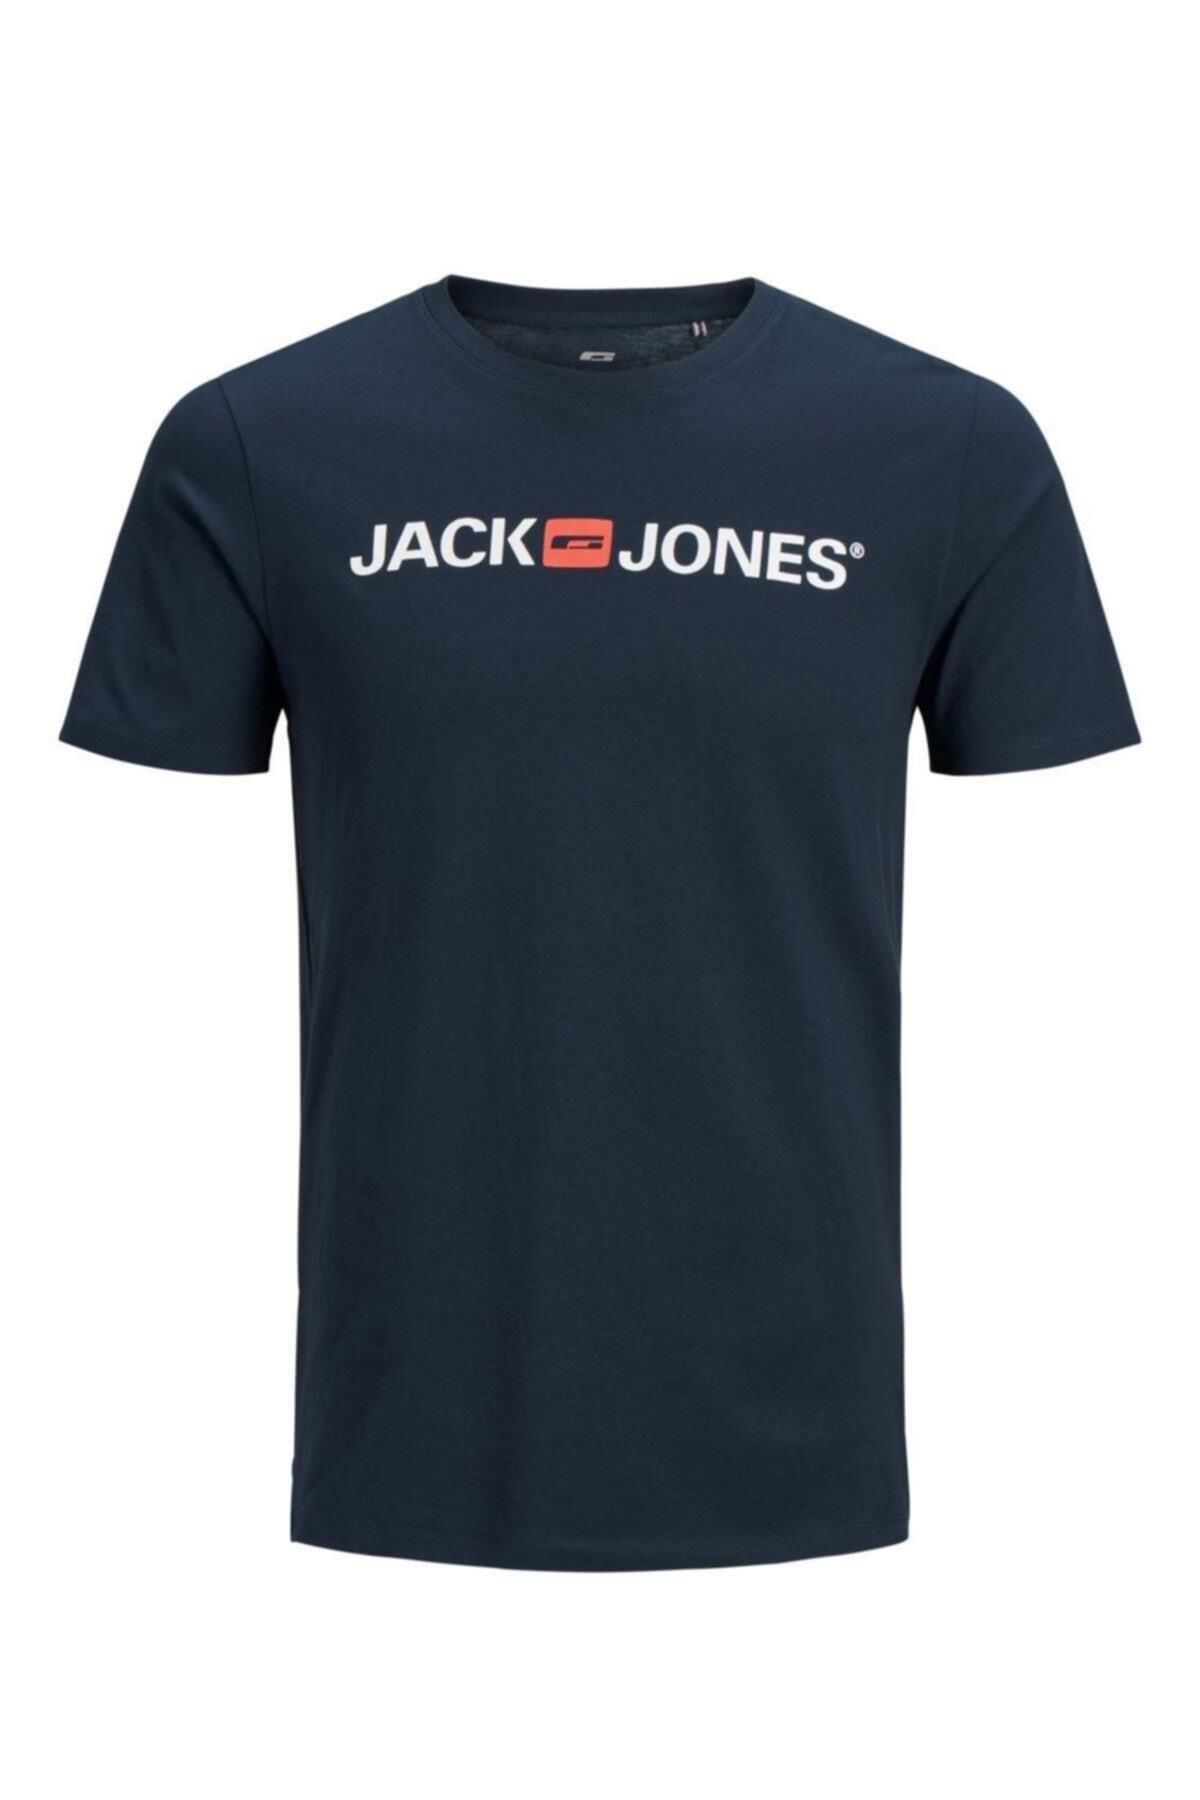 Jack & Jones Jack&jones 12137126 On Jack&jones Yazılı 0 Yaka Kısa Kol Tsh